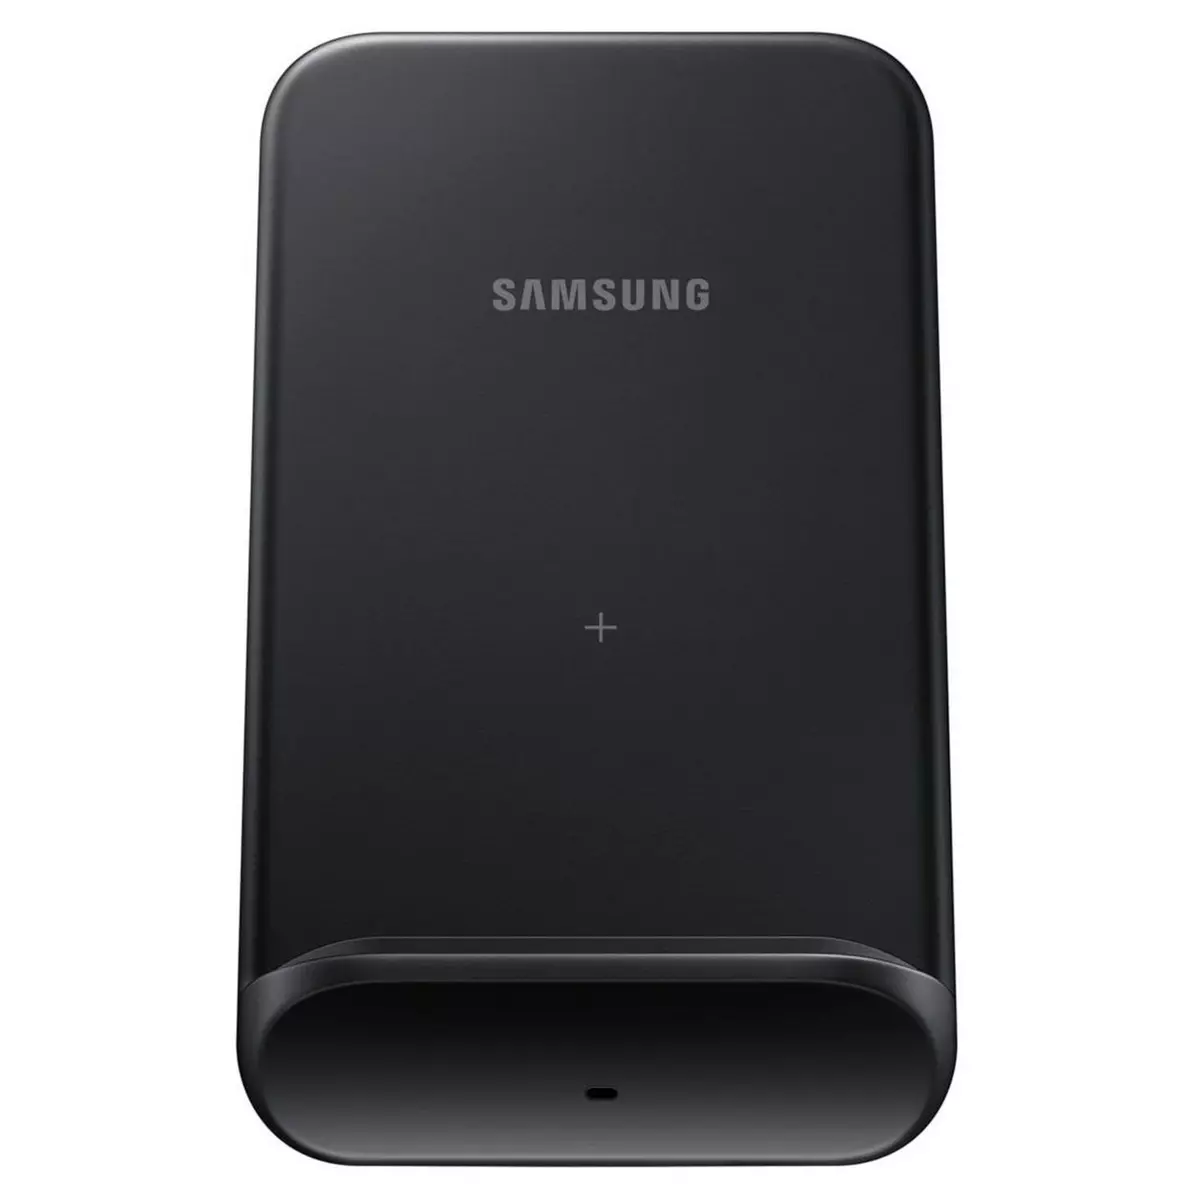 SAMSUNG Chargeur sans fil pour smartphone - Noir